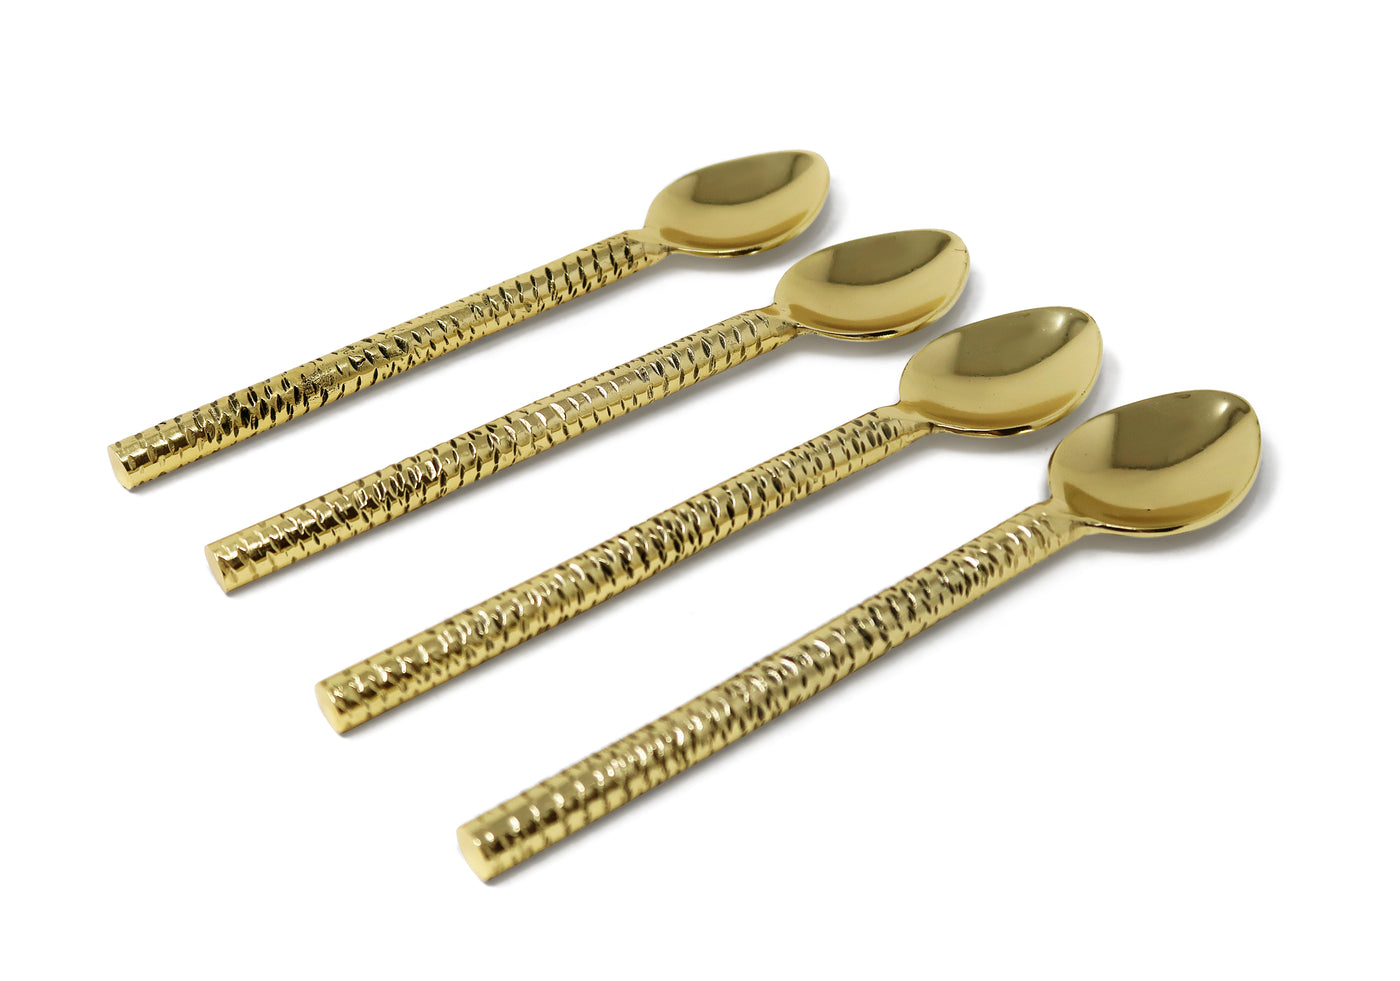 Set of 4 Gold Hammered Dessert Spoons/Forks